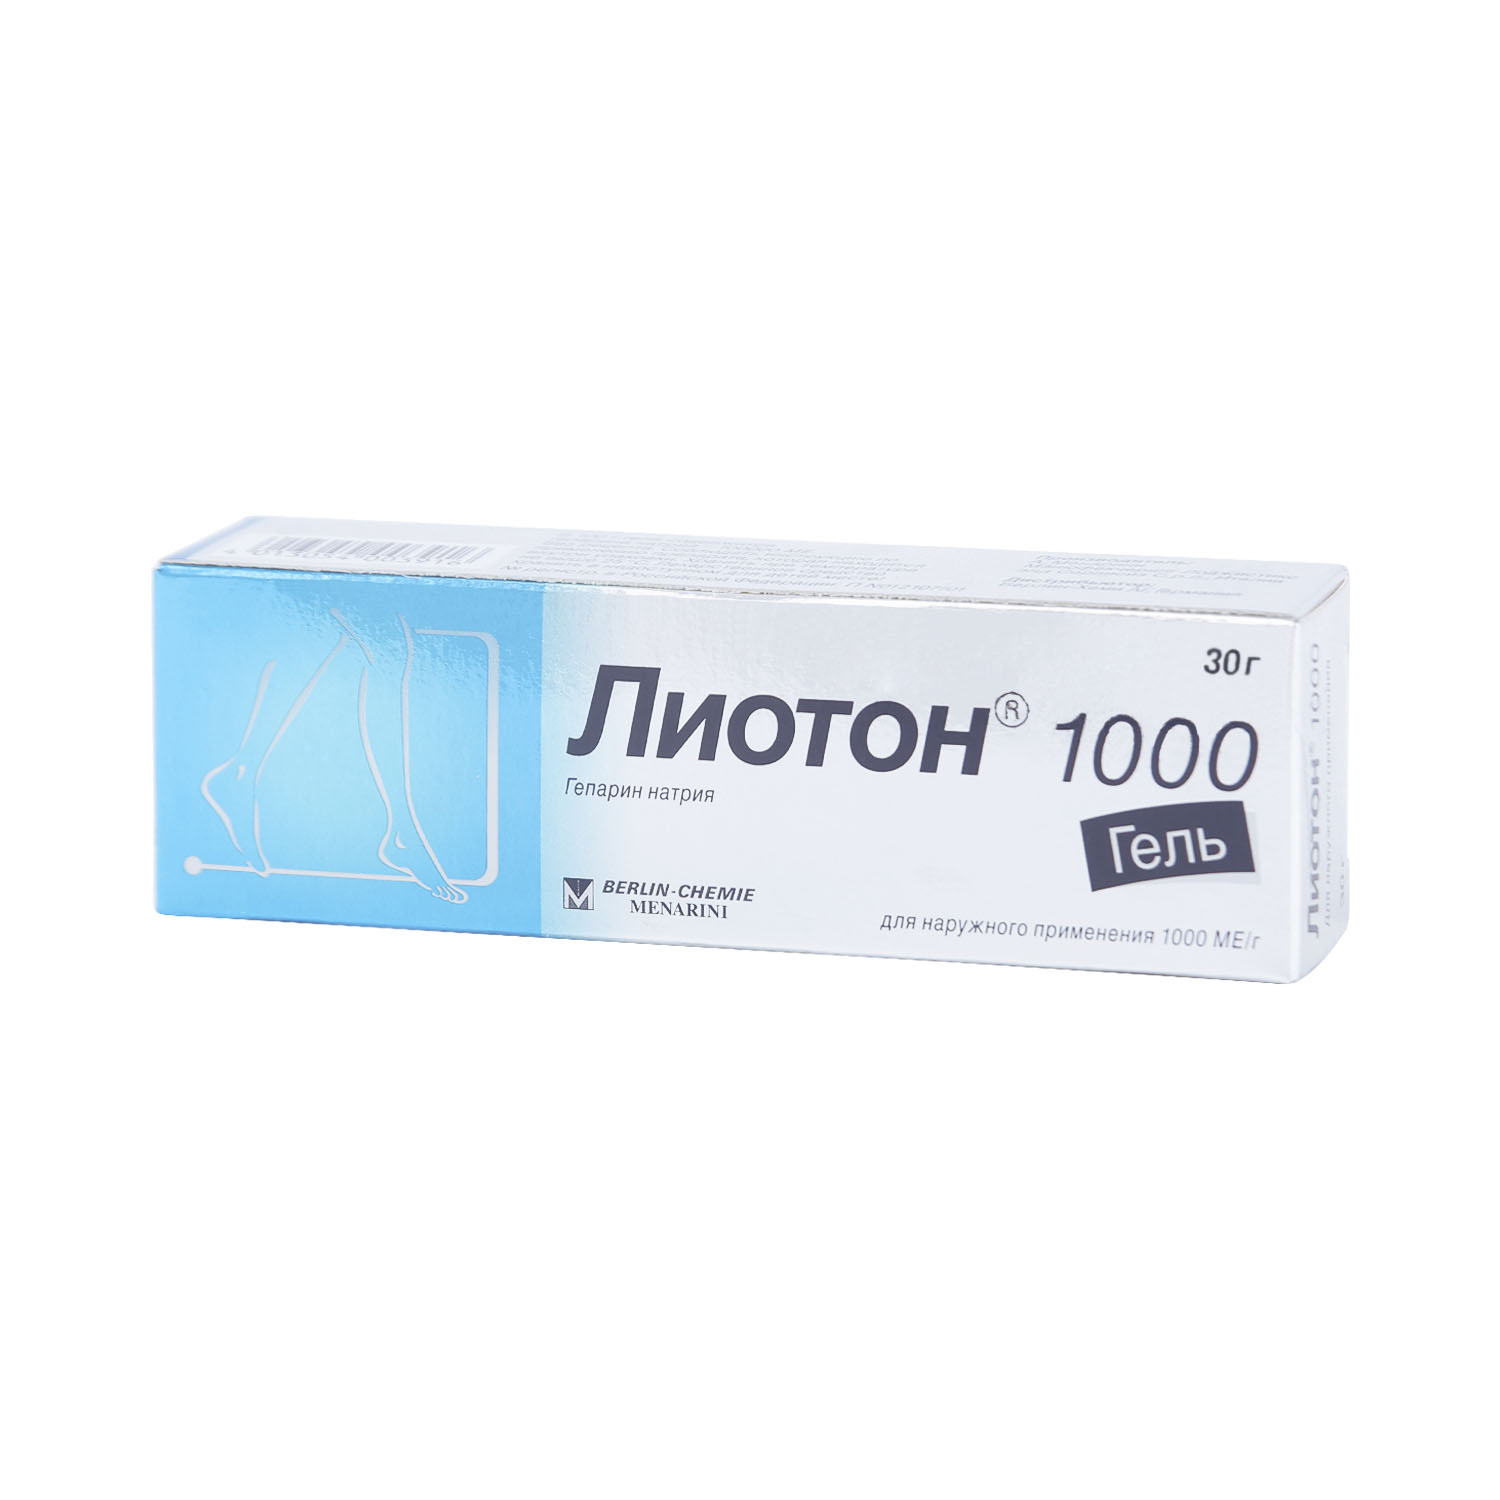 Лиотон 1000 гель 1000МЕ 30г